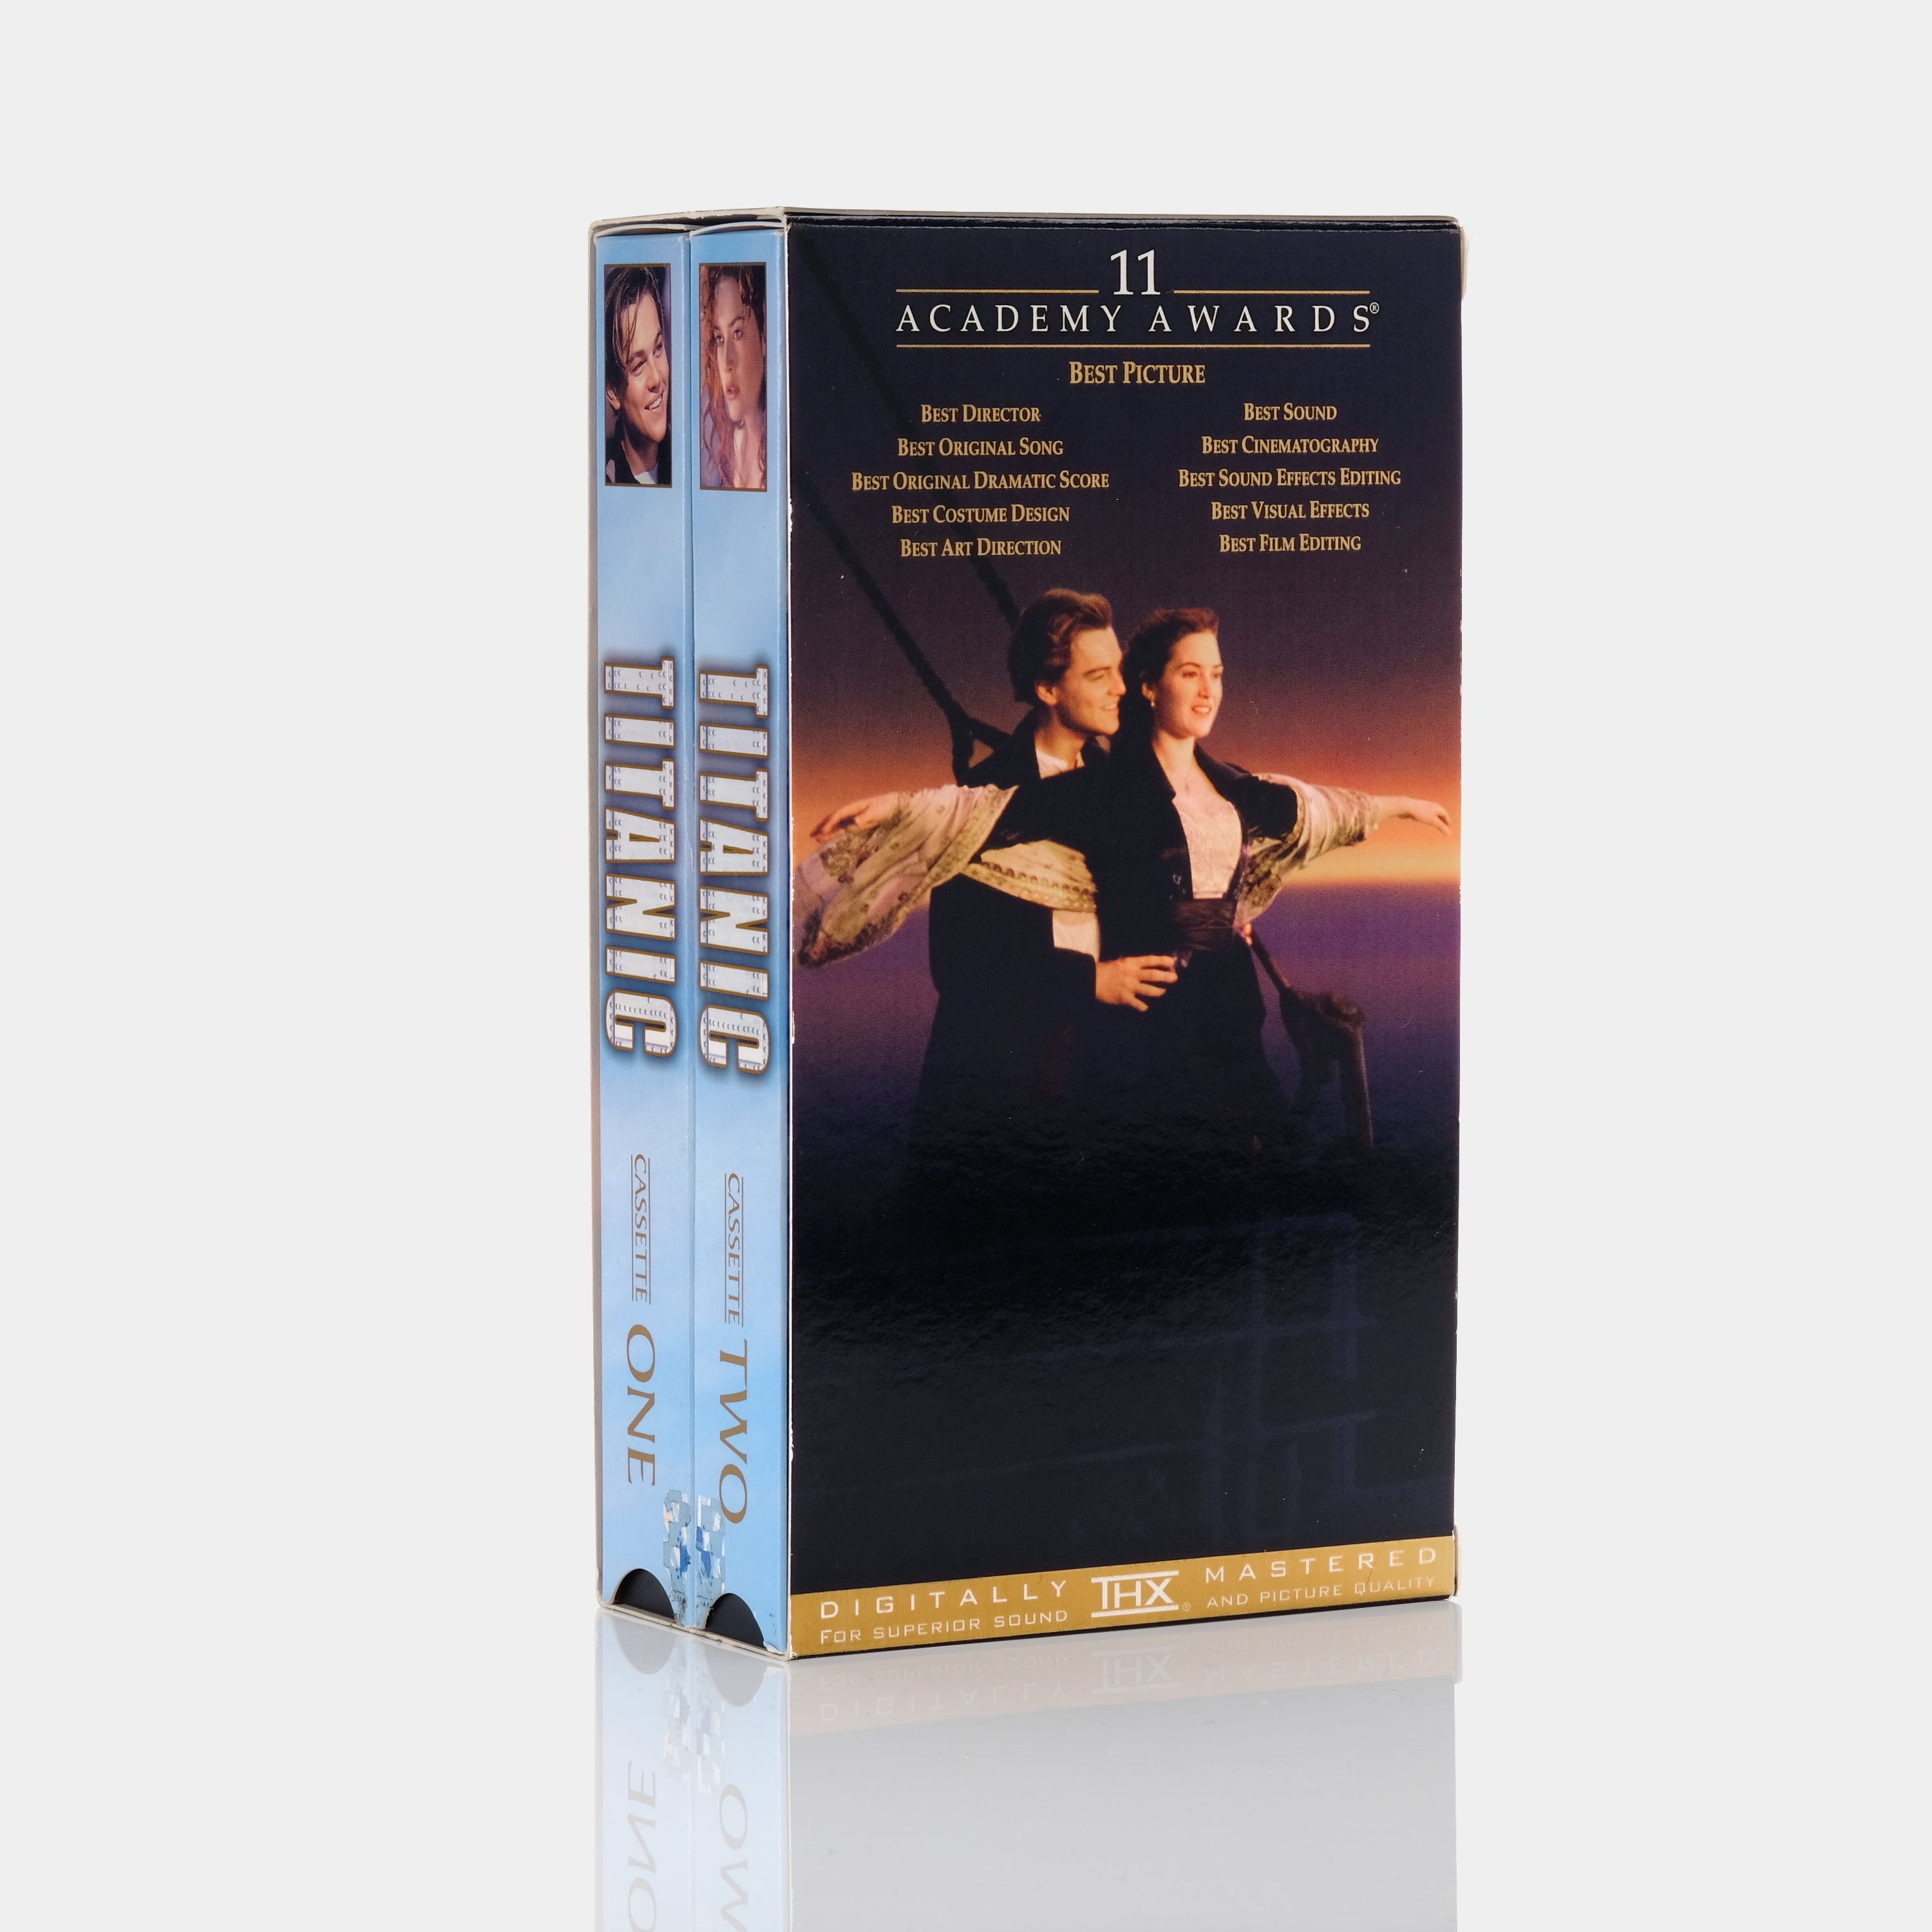 Titanic VHS Tape